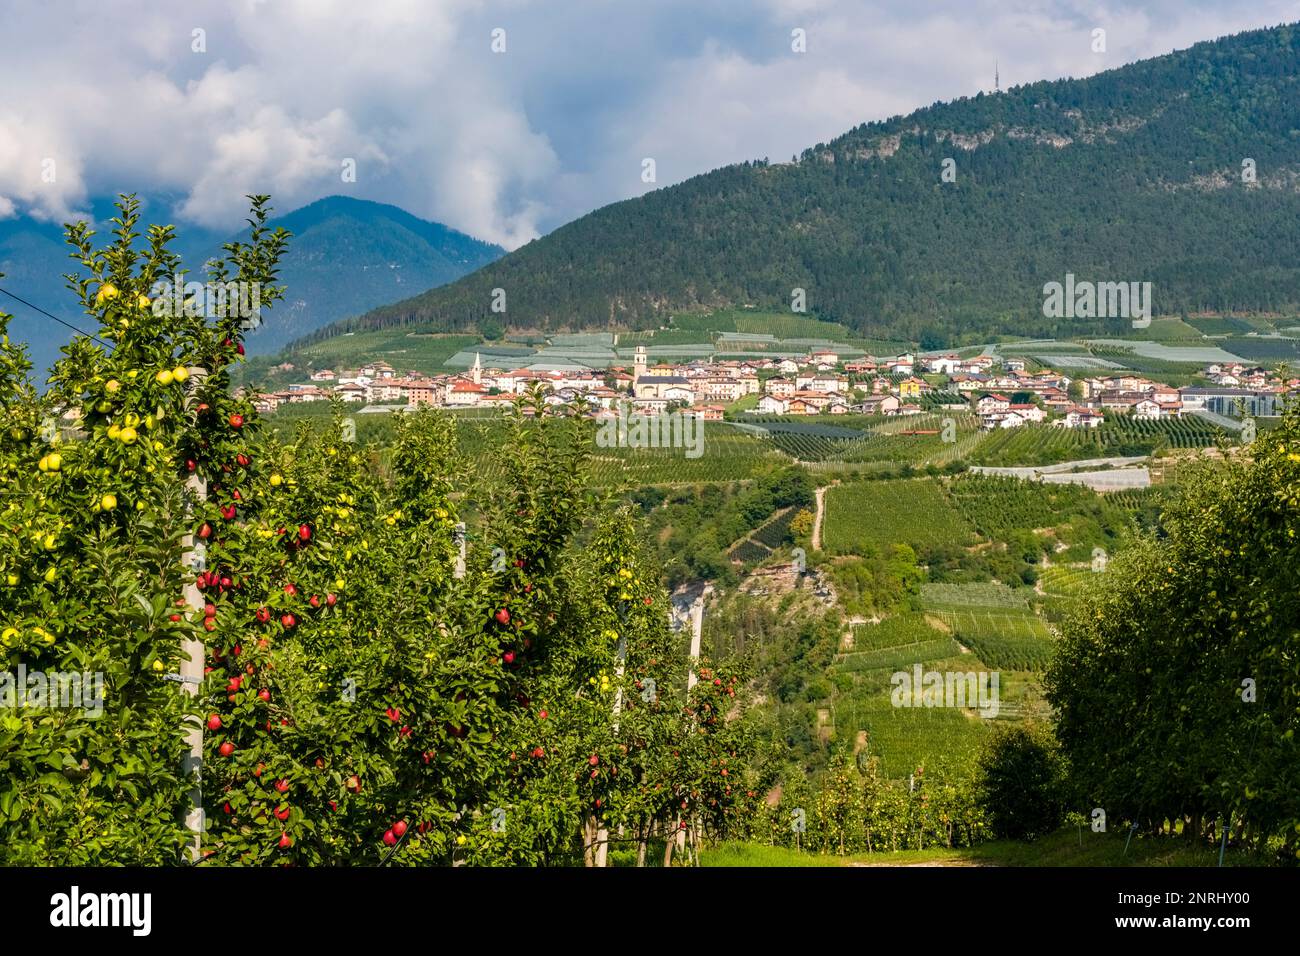 Paesaggio agricolo con colline, meleti e il piccolo paese di Revo in lontananza. Foto Stock